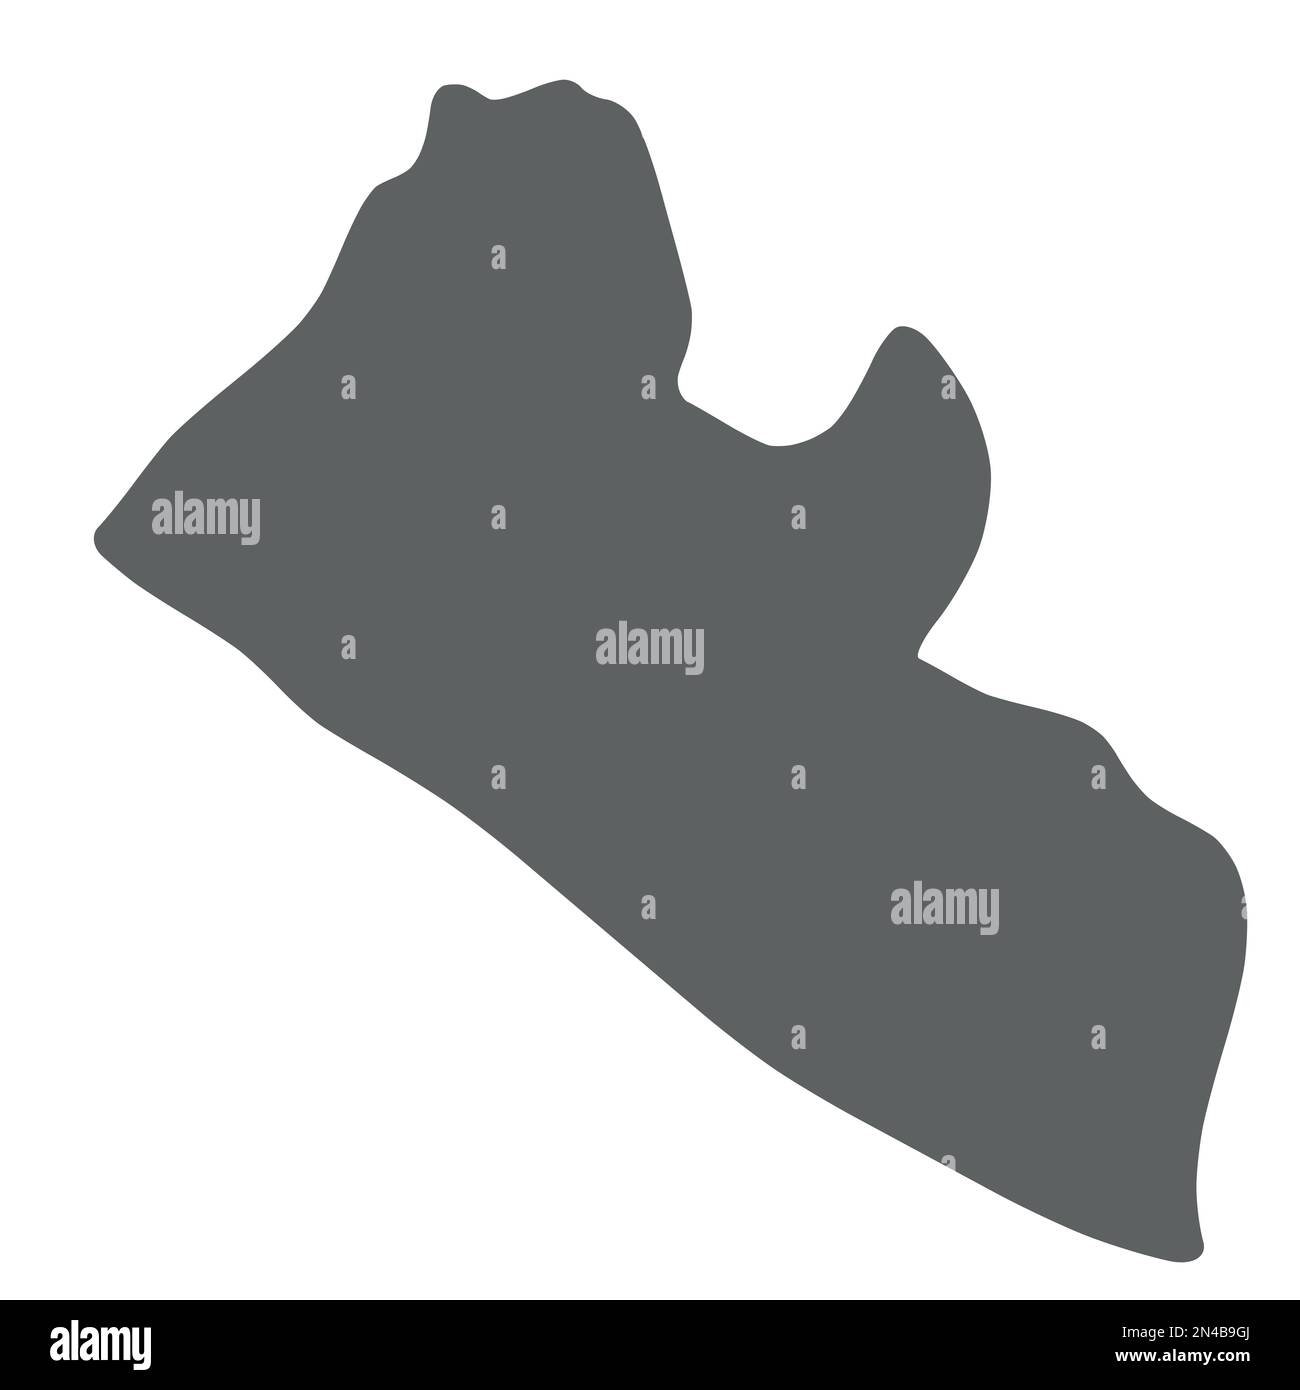 Liberia - mappa di silhouette grigio liscia della zona di campagna. Illustrazione semplice del vettore piatto. Illustrazione Vettoriale